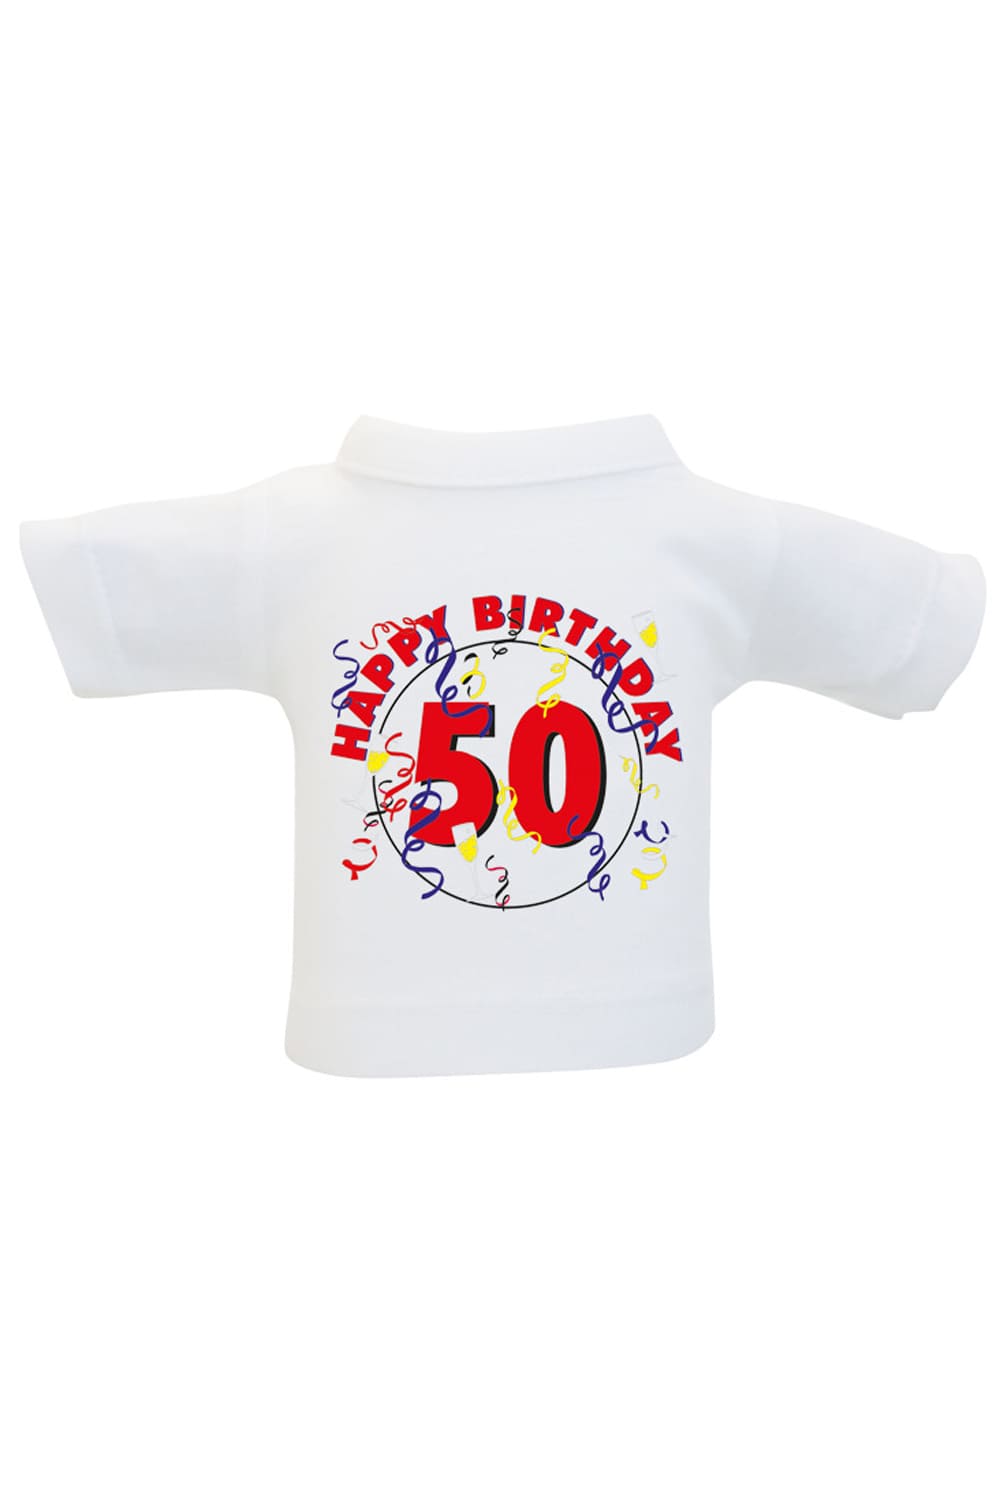 Das Mini T-Shirt ist ein lustiges Accessoire fuer Plueschtiere, Geschenke und Flaschen. Einfach das Mini Shirt einer Weinflasche oder einem Teddy anziehen und fertig ist die originelle Geschenkverpackung. Kleines Spruchshirt mit der Aufschrift: Happy Birthday 50. 